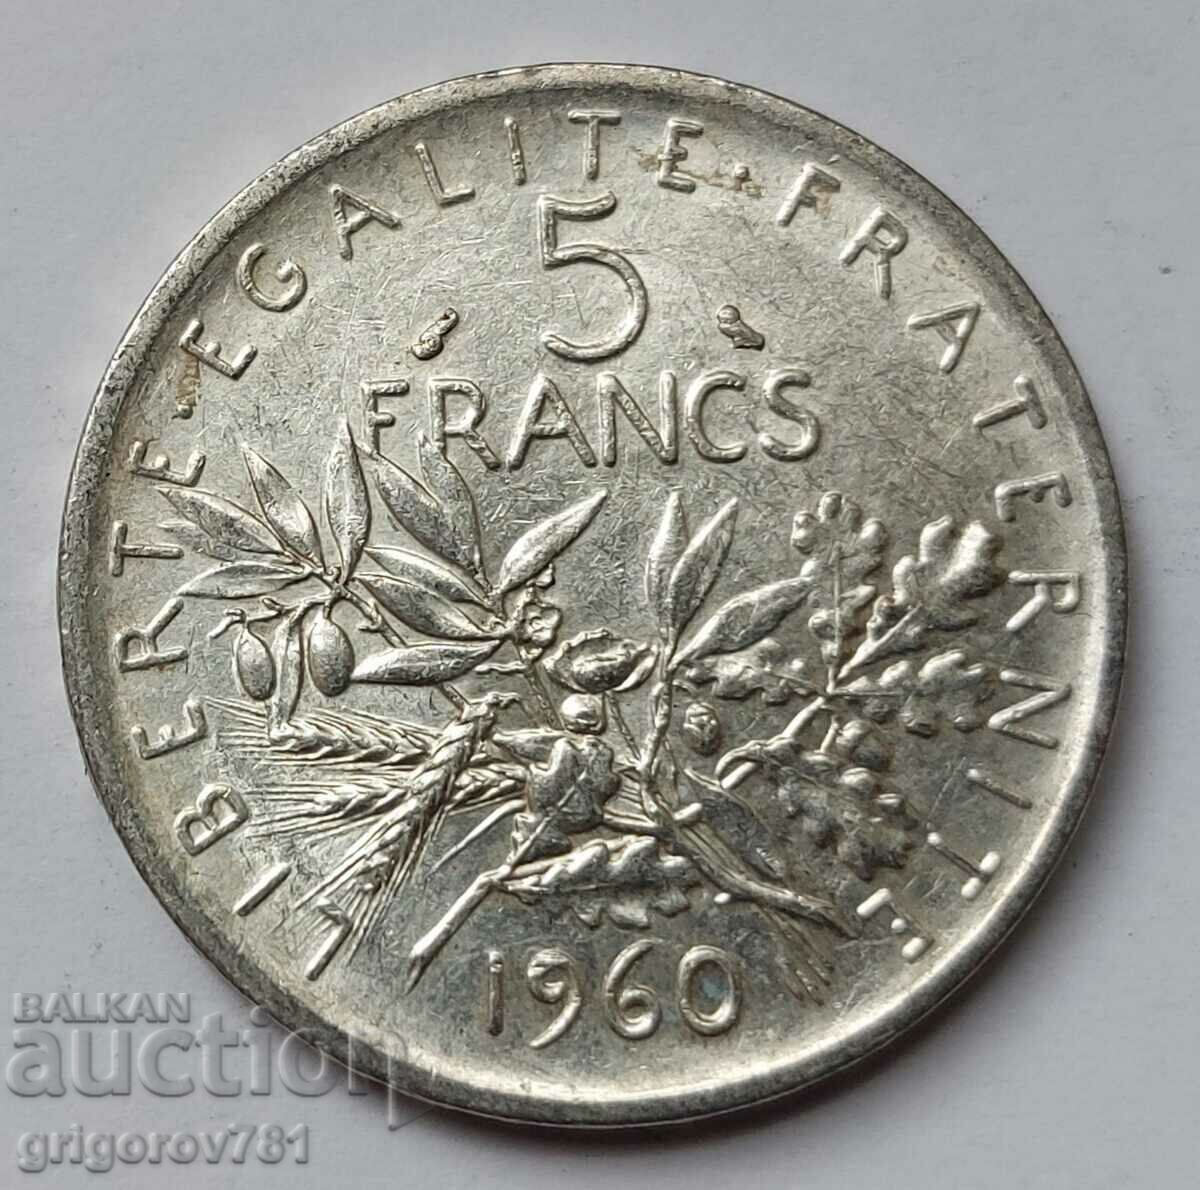 5 Franci Argint Franta 1960 - Moneda de argint #9